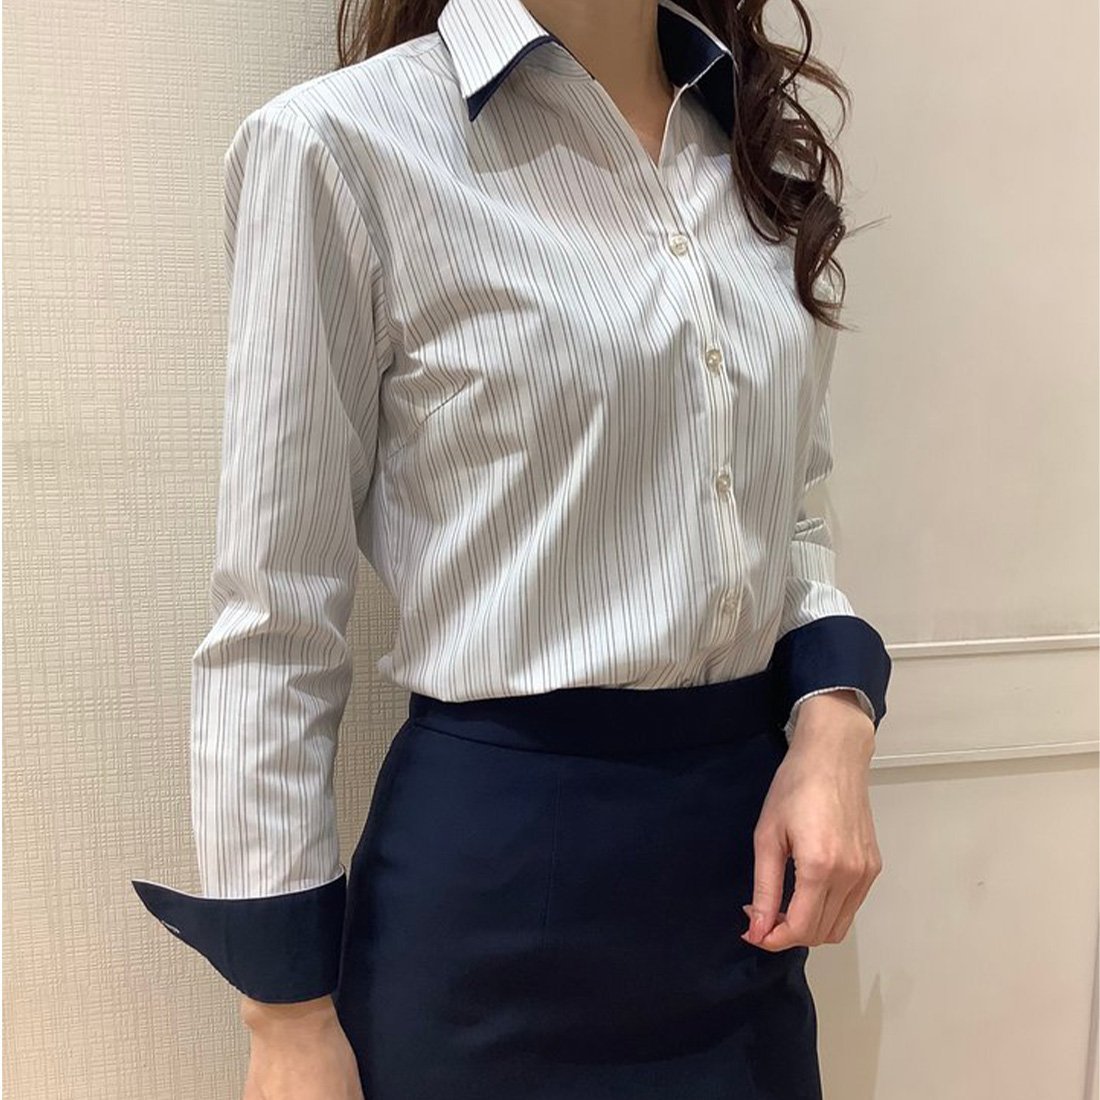 TOKYO SHIRTS（トーキョーシャツ）形態安定 スキッパーカラー 長袖レディースシャツ衿羽根が2枚でボリュームがあり人目を惹くお洒落なダブルカラー。アクセやスカーフなどの小物無しでも衿回りの華やかさを演出できます。自宅で取扱い楽ちんのポリエステル×綿のワイシャツは、忙しいビジネスウーマンに選ばれる一枚です。クリーニングに出さずに自宅で取り扱うことでダメージを軽減し、長期間ご愛用頂けます。【衿型】スキッパー　ダブル衿（衿羽根小さめ）【仕様】カフリンクス使用可能前身頃ダーツなし・後身頃ダーツ入り台衿内側・カフス裏側・下衿羽根：別布仕様【BRICKHOUSEbyTokyoShirts/ブリックハウスバイトウキョウシャツ】業界トップ水準を誇るノーアイロンの形態安定加工は自宅で洗濯可能でお手入れ簡単！高度な縫製技術を用いた高付加価値シャツでありながら選ぶことを気軽に楽しめます。ベーシックから多様なデザインまで幅広いバリエーションで豊富なサイズ展開で、ディテールの隅々にまで織り込んで一枚一枚丁寧に仕立てられたシャツです。型番：BL01I104AB14K10-53-050 KH4747【採寸】■レディースドレスシャツ(長袖)■【XS】衿回り / 35 肩幅 / 36 バスト / 89 ウエスト / 74 着丈 / 63 長袖裄丈 / 73【S】衿回り / 36 肩幅 / 38 バスト / 92 ウエスト / 79 着丈 / 64 長袖裄丈 / 76【M】衿回り / 37 肩幅 / 40 バスト / 95 ウエスト / 83 着丈 / 64 長袖裄丈 / 77【L】衿回り / 38 肩幅 / 42 バスト / 100 ウエスト / 89 着丈 / 65 長袖裄丈 / 78【LL】衿回り / 39 肩幅 / 44 バスト / 105 ウエスト / 95 着着丈 / 65 長袖裄丈 / 79【XL】衿回り / 40 肩幅 / 46 バスト / 116 ウエスト / 106 着丈 / 65 長袖裄丈 / 79※上記「衿回り」は台衿ボタンが付いている衿型の寸法です。商品のサイズについて【商品詳細】ベトナム素材：ポリエステル65% 綿35%サイズ：XS、S、M、L、LL、XL※画面上と実物では多少色具合が異なって見える場合もございます。ご了承ください。商品のカラーについて 【予約商品について】 ※「先行予約販売中」「予約販売中」をご注文の際は予約商品についてをご確認ください。TOKYO SHIRTS（トーキョーシャツ）形態安定 スキッパーカラー 長袖レディースシャツ衿羽根が2枚でボリュームがあり人目を惹くお洒落なダブルカラー。アクセやスカーフなどの小物無しでも衿回りの華やかさを演出できます。自宅で取扱い楽ちんのポリエステル×綿のワイシャツは、忙しいビジネスウーマンに選ばれる一枚です。クリーニングに出さずに自宅で取り扱うことでダメージを軽減し、長期間ご愛用頂けます。【衿型】スキッパー　ダブル衿（衿羽根小さめ）【仕様】カフリンクス使用可能前身頃ダーツなし・後身頃ダーツ入り台衿内側・カフス裏側・下衿羽根：別布仕様【BRICKHOUSEbyTokyoShirts/ブリックハウスバイトウキョウシャツ】業界トップ水準を誇るノーアイロンの形態安定加工は自宅で洗濯可能でお手入れ簡単！高度な縫製技術を用いた高付加価値シャツでありながら選ぶことを気軽に楽しめます。ベーシックから多様なデザインまで幅広いバリエーションで豊富なサイズ展開で、ディテールの隅々にまで織り込んで一枚一枚丁寧に仕立てられたシャツです。型番：BL01I104AB14K10-53-050 KH4747【採寸】■レディースドレスシャツ(長袖)■【XS】衿回り / 35 肩幅 / 36 バスト / 89 ウエスト / 74 着丈 / 63 長袖裄丈 / 73【S】衿回り / 36 肩幅 / 38 バスト / 92 ウエスト / 79 着丈 / 64 長袖裄丈 / 76【M】衿回り / 37 肩幅 / 40 バスト / 95 ウエスト / 83 着丈 / 64 長袖裄丈 / 77【L】衿回り / 38 肩幅 / 42 バスト / 100 ウエスト / 89 着丈 / 65 長袖裄丈 / 78【LL】衿回り / 39 肩幅 / 44 バスト / 105 ウエスト / 95 着着丈 / 65 長袖裄丈 / 79【XL】衿回り / 40 肩幅 / 46 バスト / 116 ウエスト / 106 着丈 / 65 長袖裄丈 / 79※上記「衿回り」は台衿ボタンが付いている衿型の寸法です。商品のサイズについて【商品詳細】ベトナム素材：ポリエステル65% 綿35%サイズ：XS、S、M、L、LL、XL※画面上と実物では多少色具合が異なって見える場合もございます。ご了承ください。商品のカラーについて 【予約商品について】 ※「先行予約販売中」「予約販売中」をご注文の際は予約商品についてをご確認ください。■重要なお知らせ※ 当店では、ギフト配送サービス及びラッピングサービスを行っておりません。ご注文者様とお届け先が違う場合でも、タグ（値札）付「納品書 兼 返品連絡票」同梱の状態でお送り致しますのでご了承ください。 ラッピング・ギフト配送について※ 2点以上ご購入の場合、全ての商品が揃い次第一括でのお届けとなります。お届け予定日の異なる商品をお買い上げの場合はご注意下さい。お急ぎの商品がございましたら分けてご購入いただきますようお願い致します。発送について ※ 買い物カートに入れるだけでは在庫確保されませんのでお早めに購入手続きをしてください。当店では在庫を複数サイトで共有しているため、同時にご注文があった場合、売切れとなってしまう事がございます。お手数ですが、ご注文後に当店からお送りする「ご注文内容の確認メール」をご確認ください。ご注文の確定について ※ Rakuten Fashionの商品ページに記載しているメーカー希望小売価格は、楽天市場「商品価格ナビ」に登録されている価格に準じています。 商品の価格についてTOKYO SHIRTSTOKYO SHIRTSのYシャツ・カッターシャツスーツ・フォーマルご注文・お届けについて発送ガイドラッピンググッズ3,980円以上送料無料ご利用ガイド